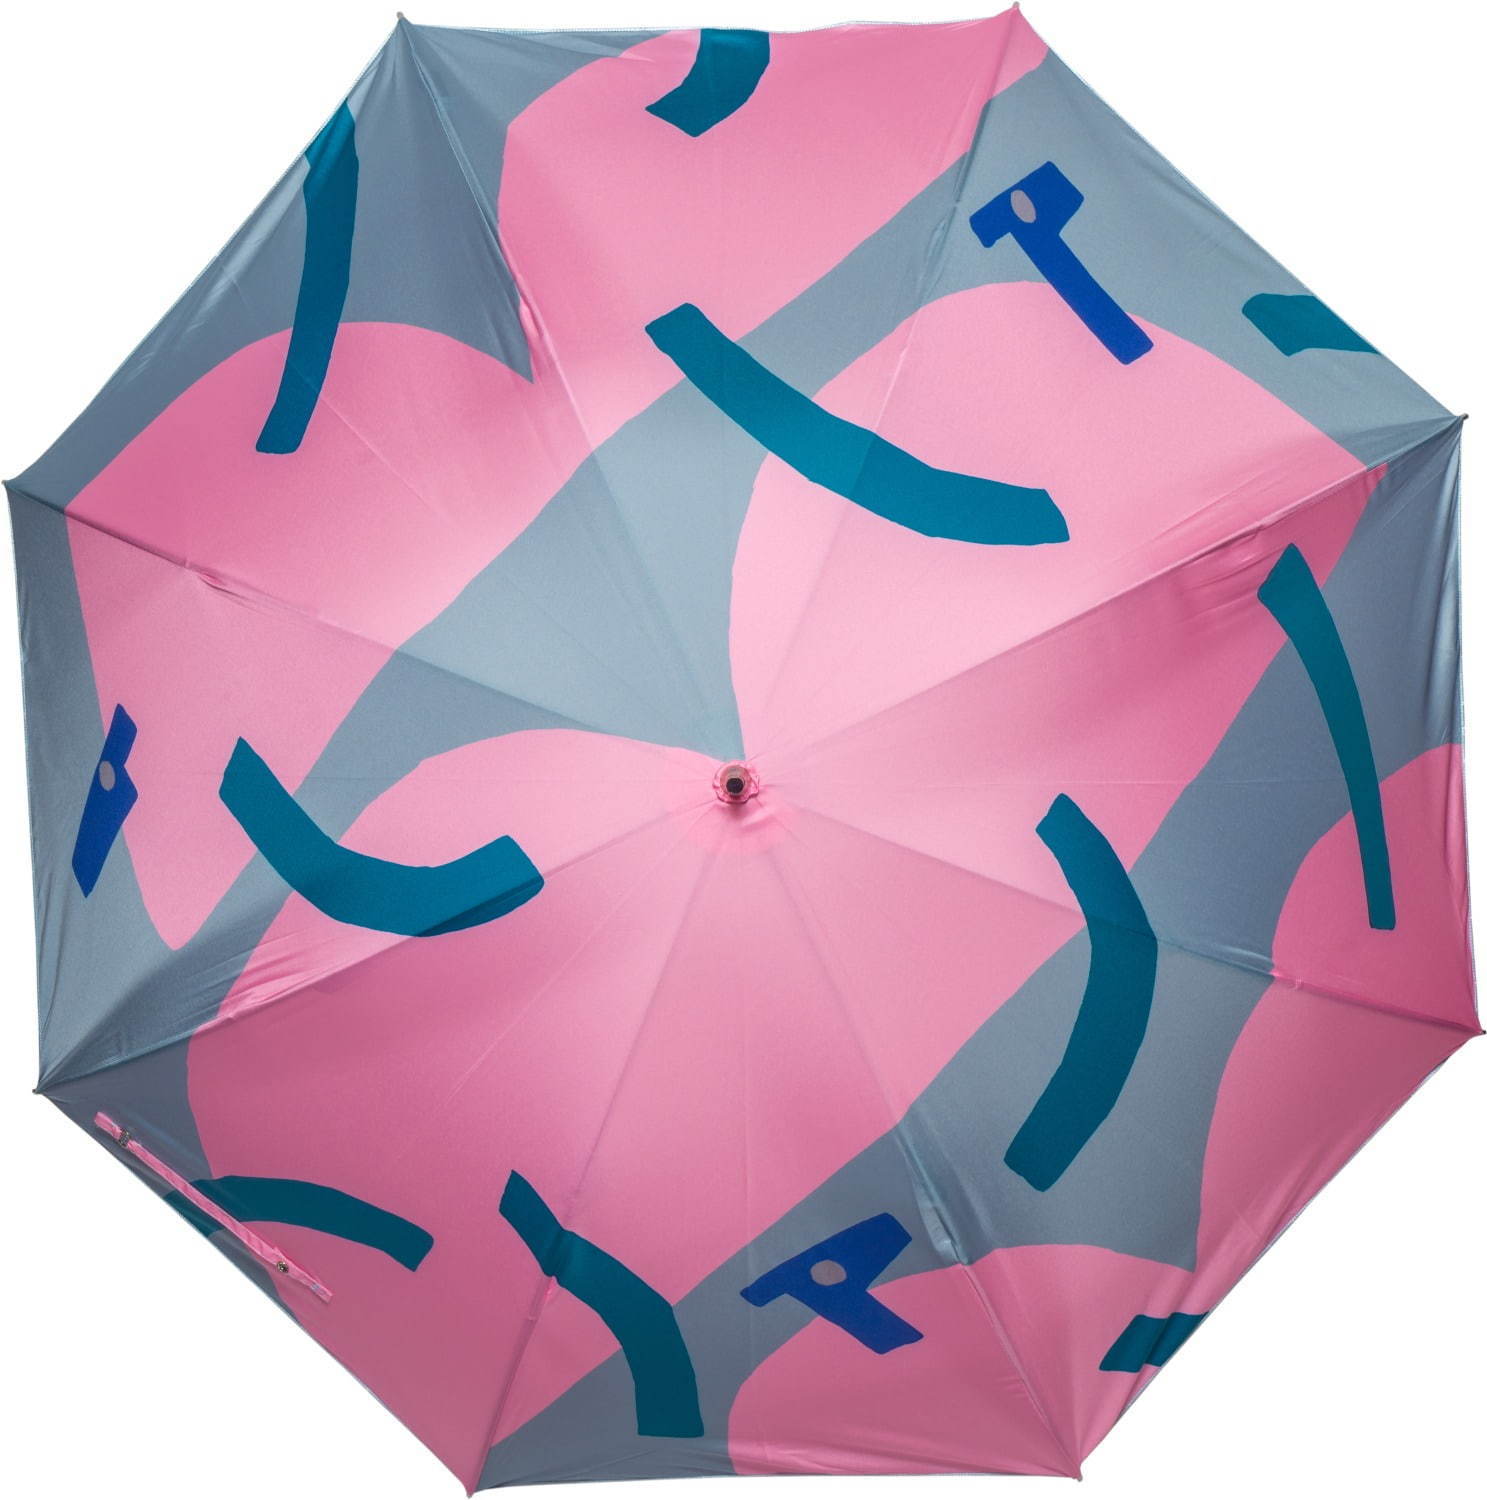 鈴木マサル 日傘umbrella & parasol 2013 amagaeru